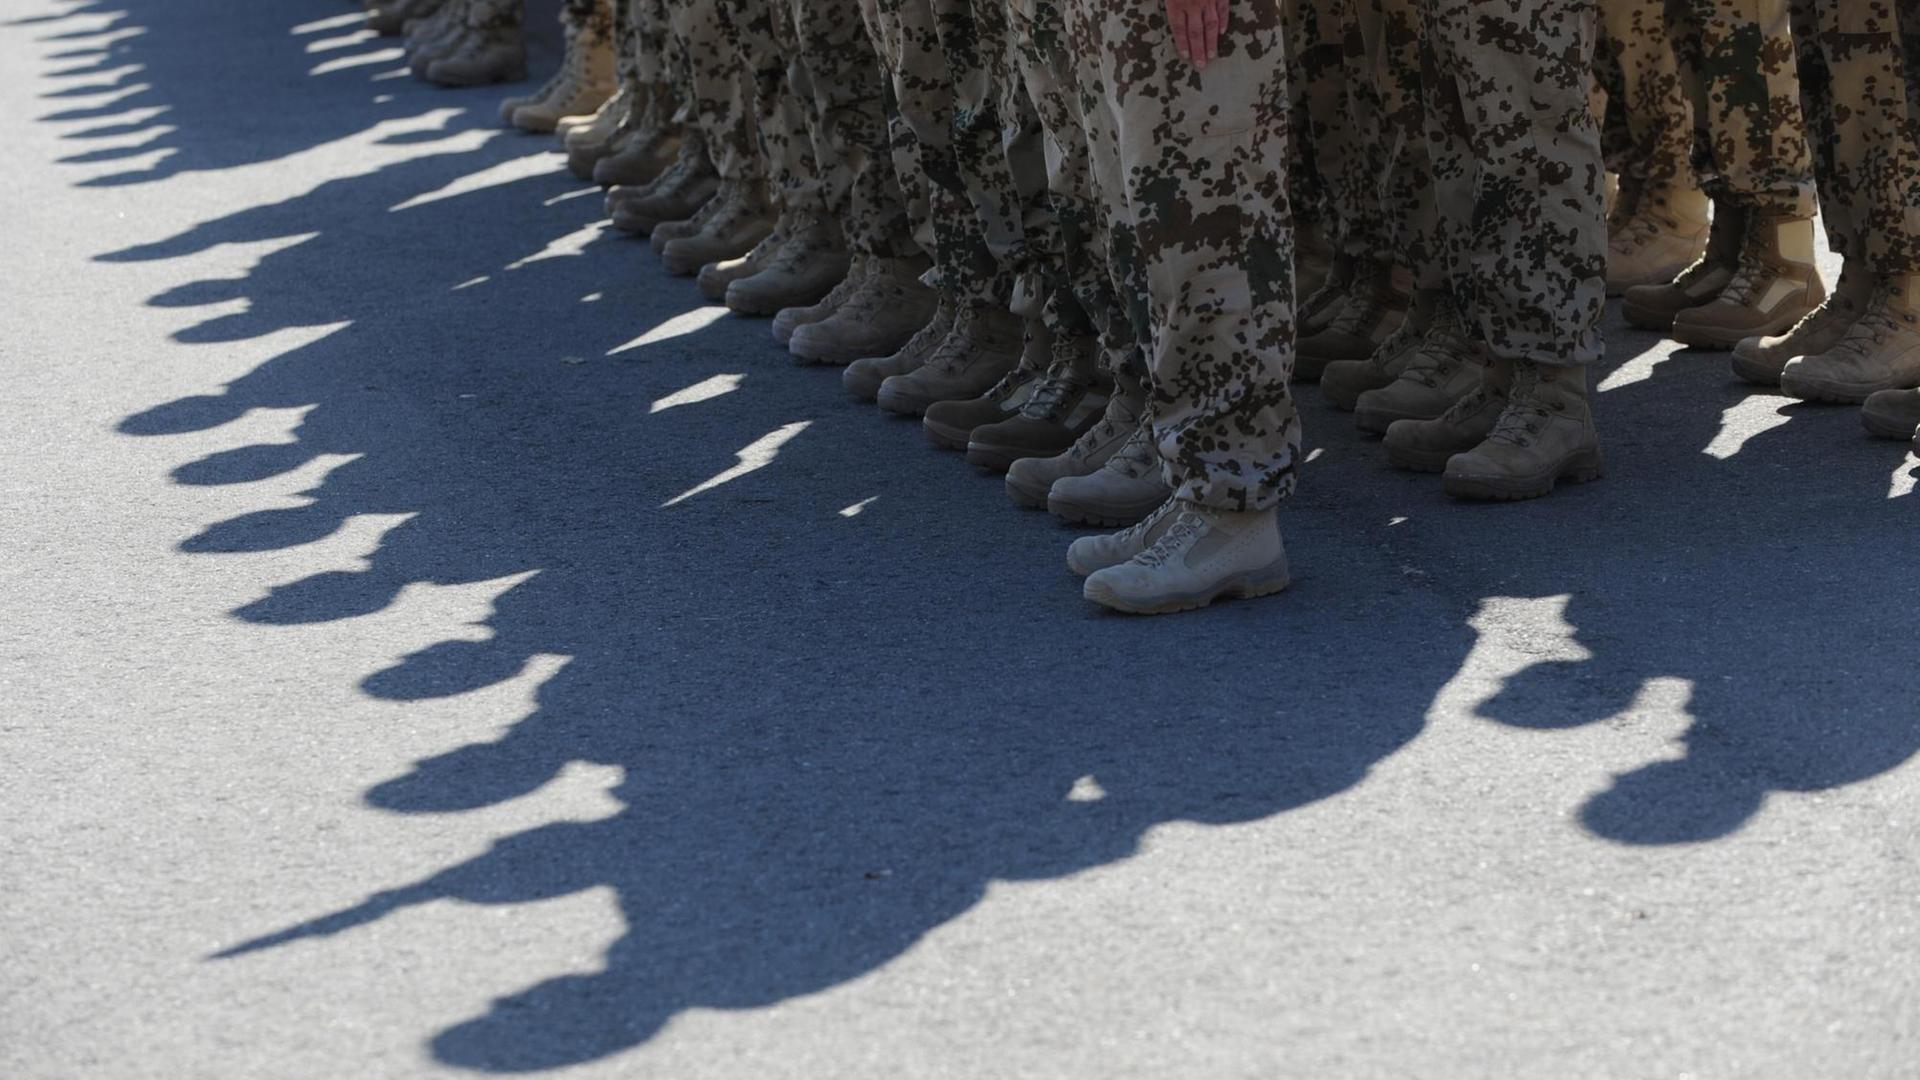 Schatten von Soldaten des Jägerbataillons 292 sind beim Rückkehrappell in der Fürstenberg-Kaserne in Donaueschingen auf dem Boden zu sehen.